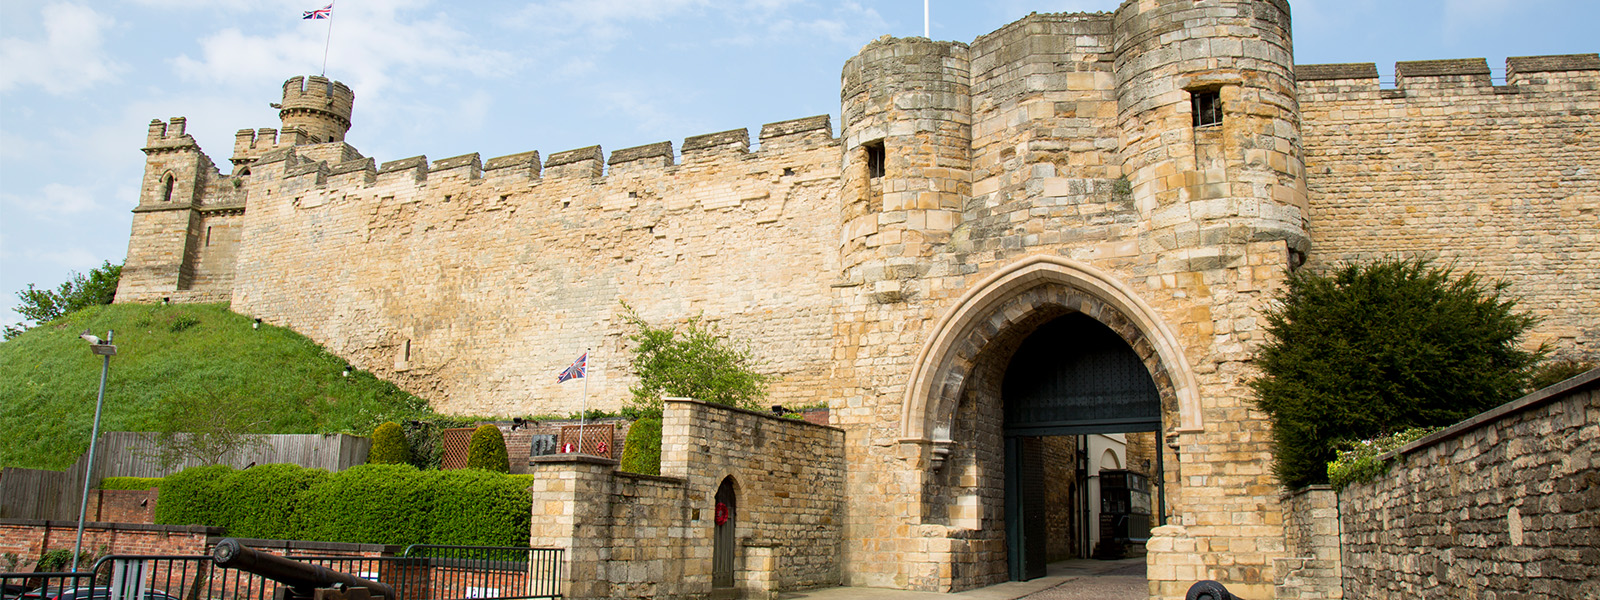 Lincoln Castle gatehouse